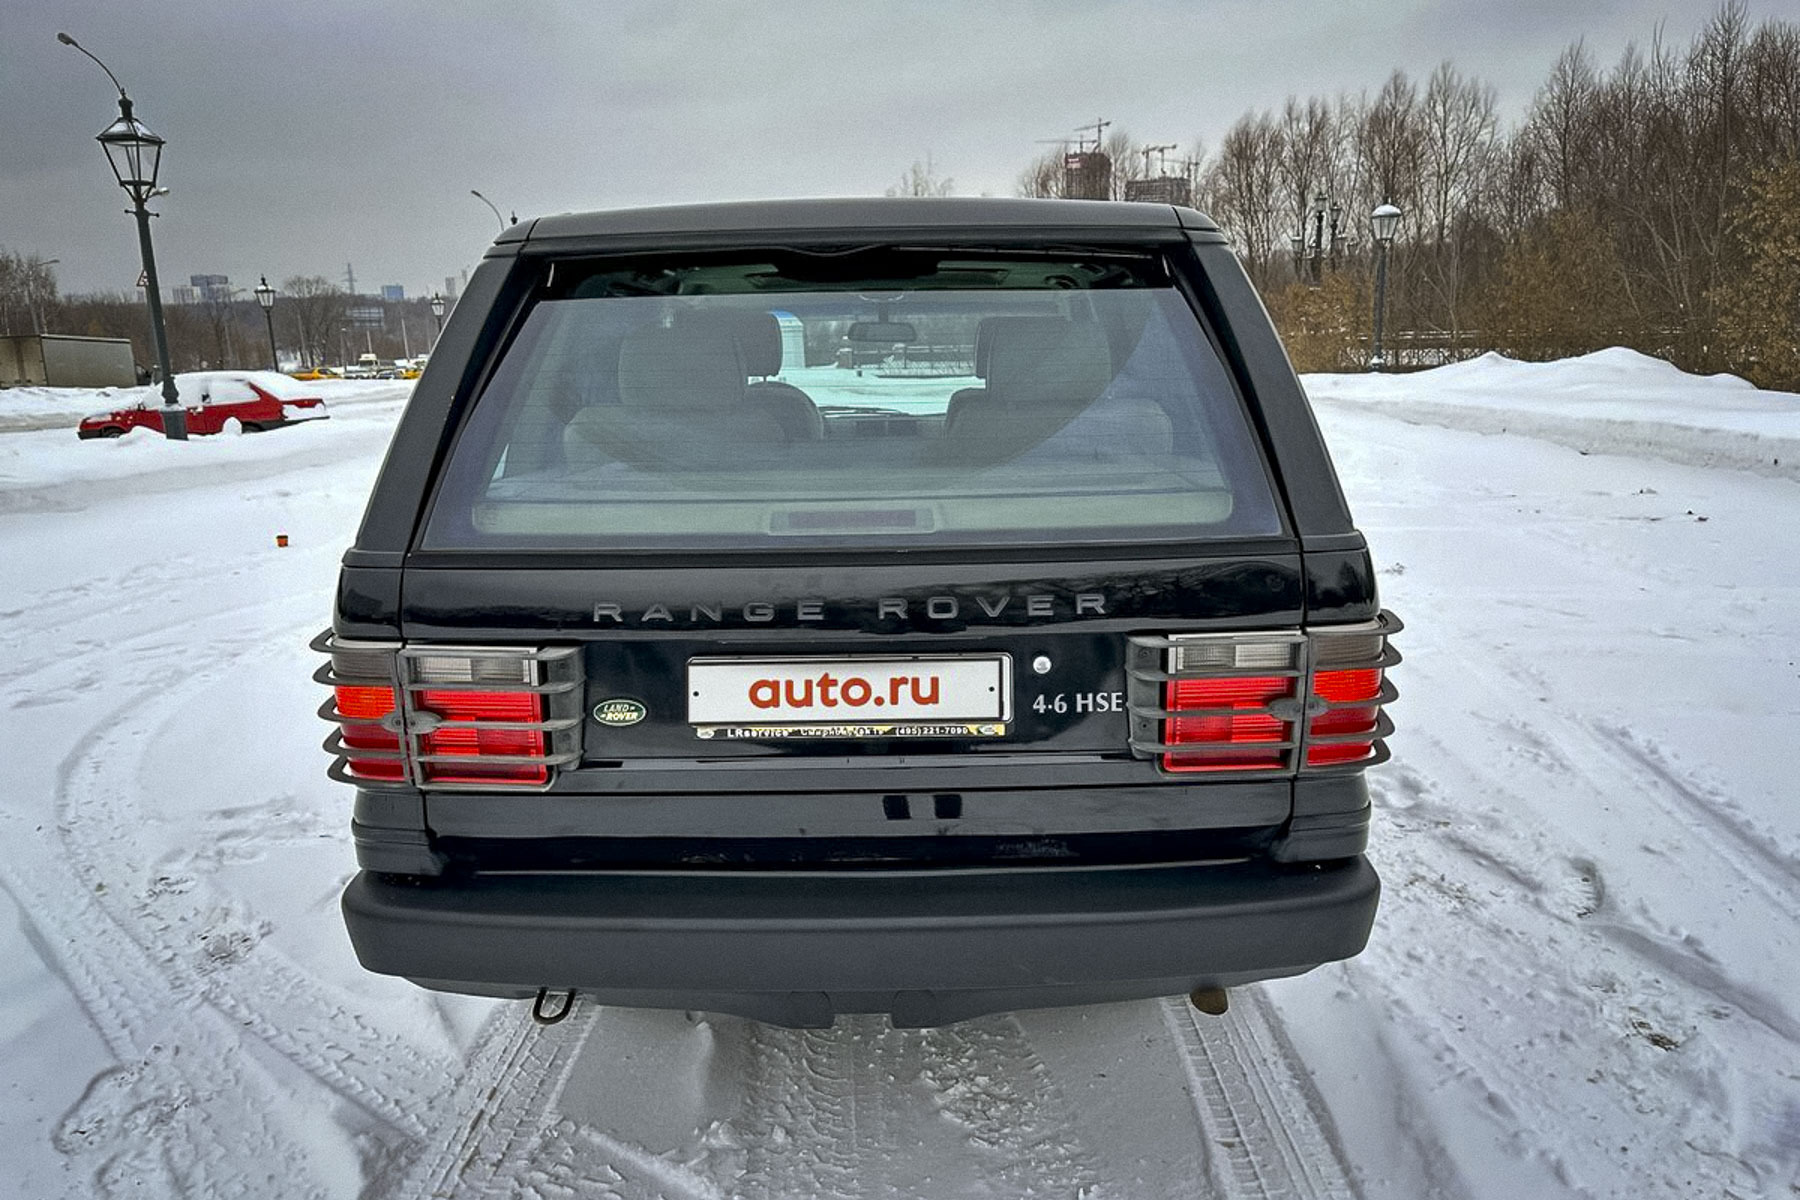 Почти новый 23-летний Range Rover продают в Москве за два миллиона рублей6